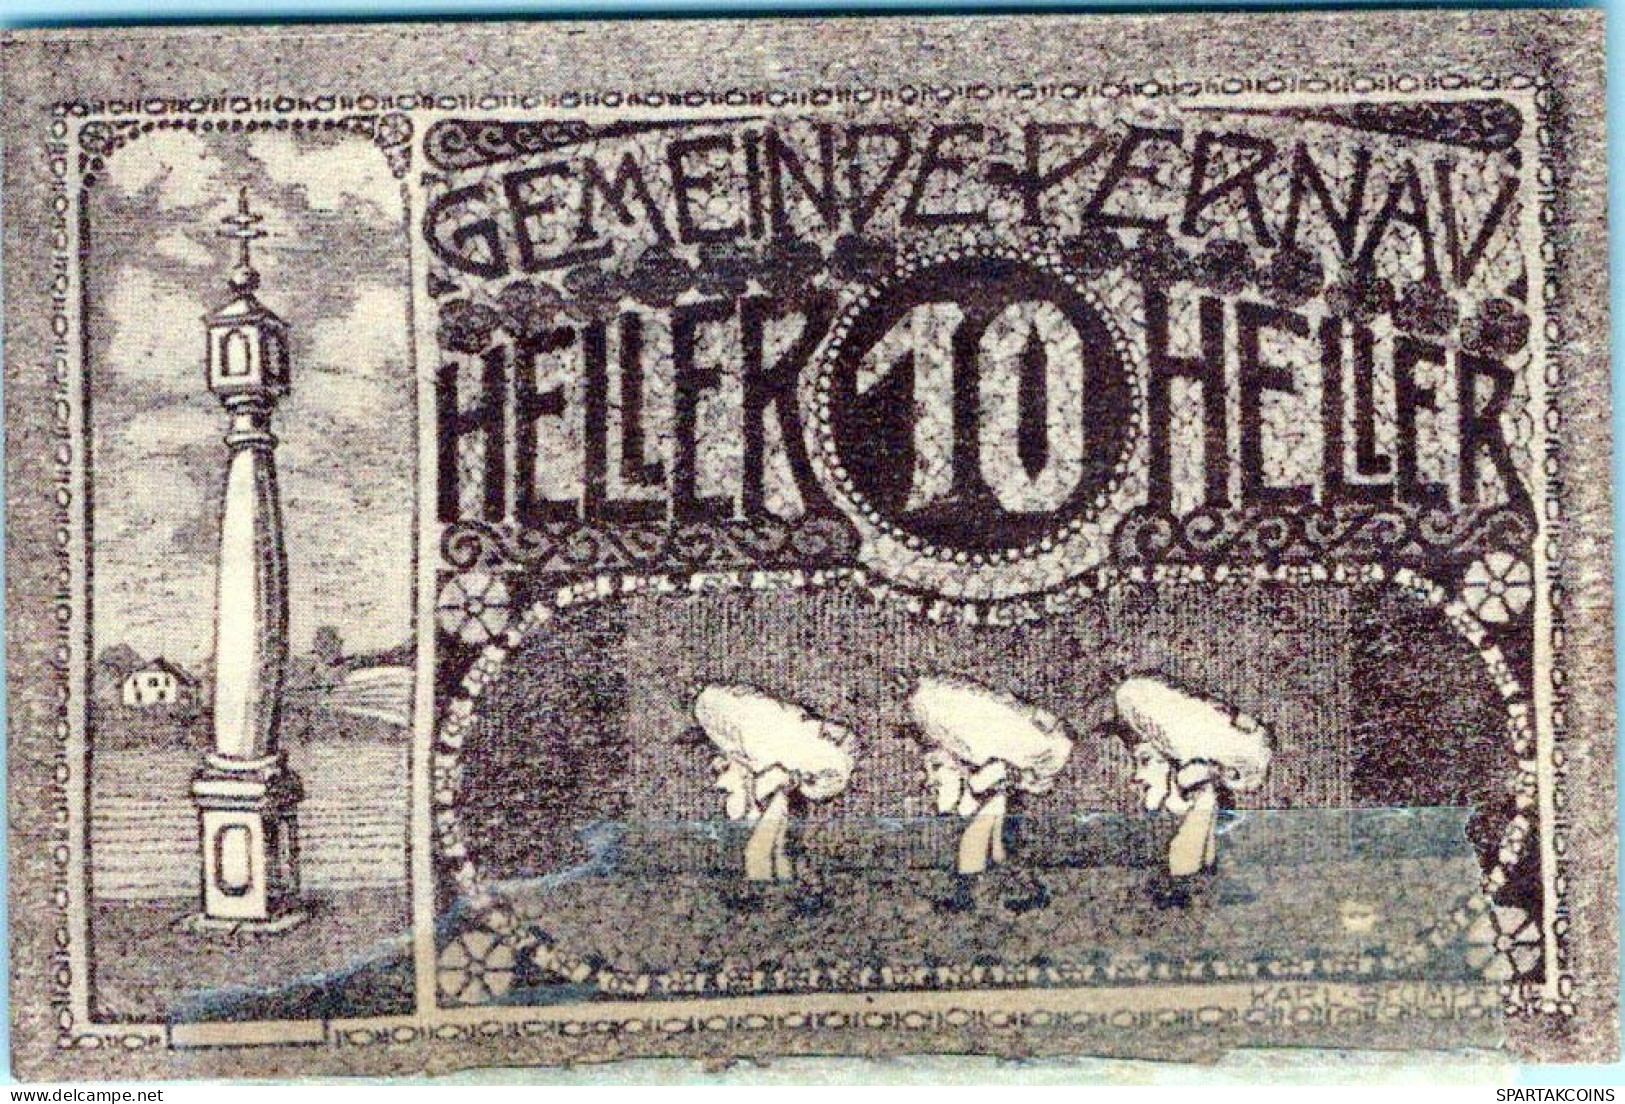 10 HELLER 1920 Stadt PERNAU Oberösterreich Österreich Notgeld Banknote #PE419 - Lokale Ausgaben